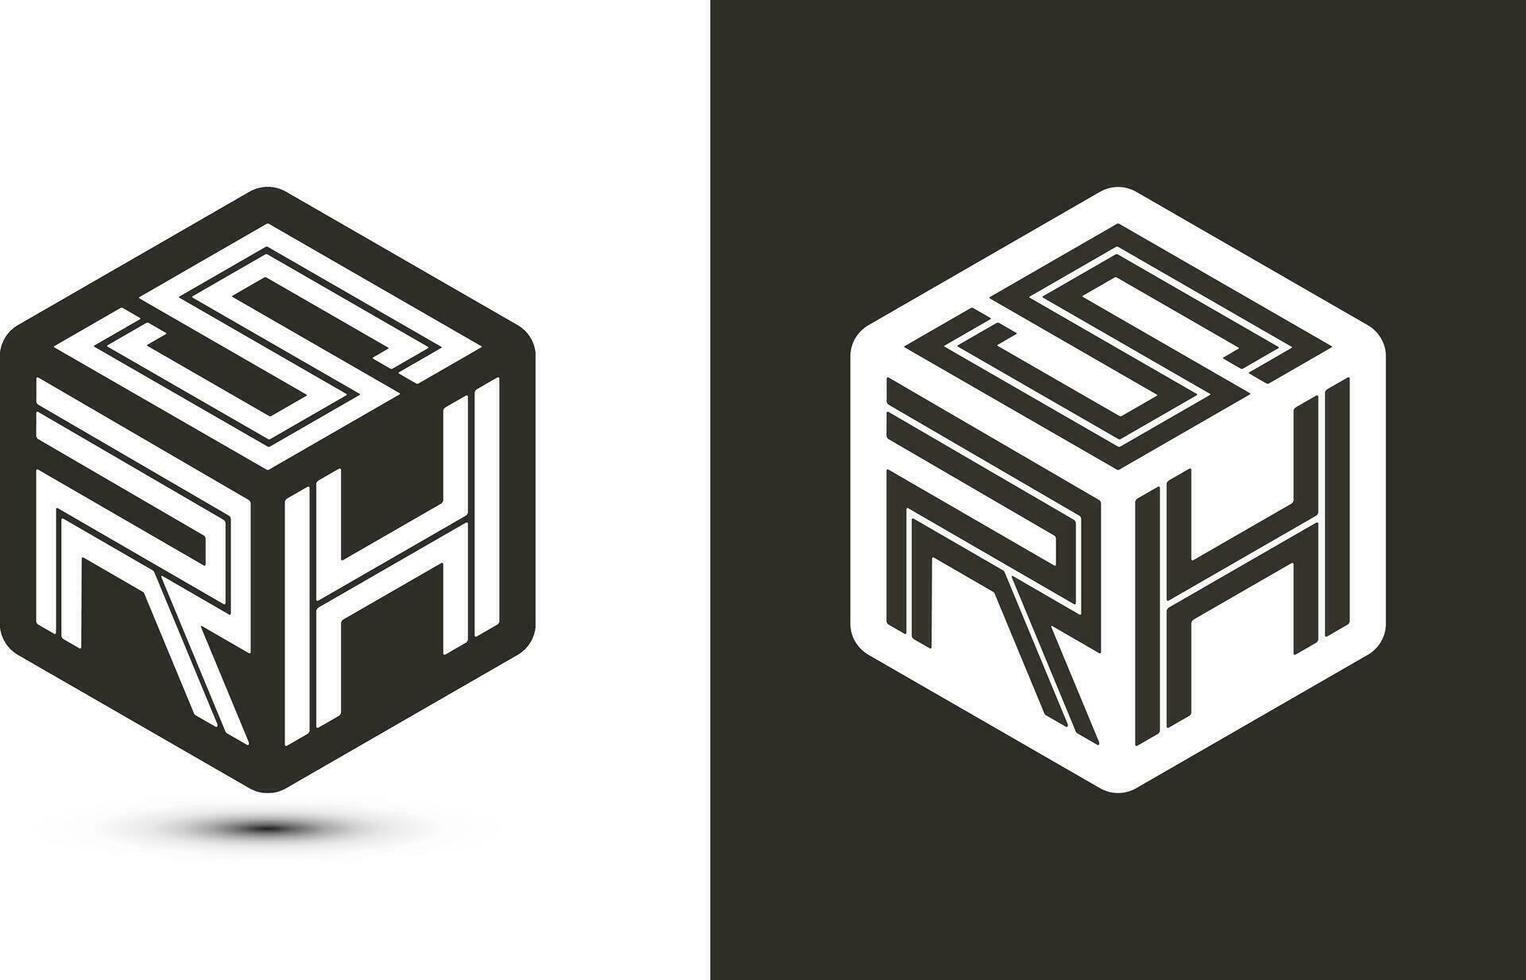 SRH letter logo design with illustrator cube logo, vector logo modern alphabet font overlap style.